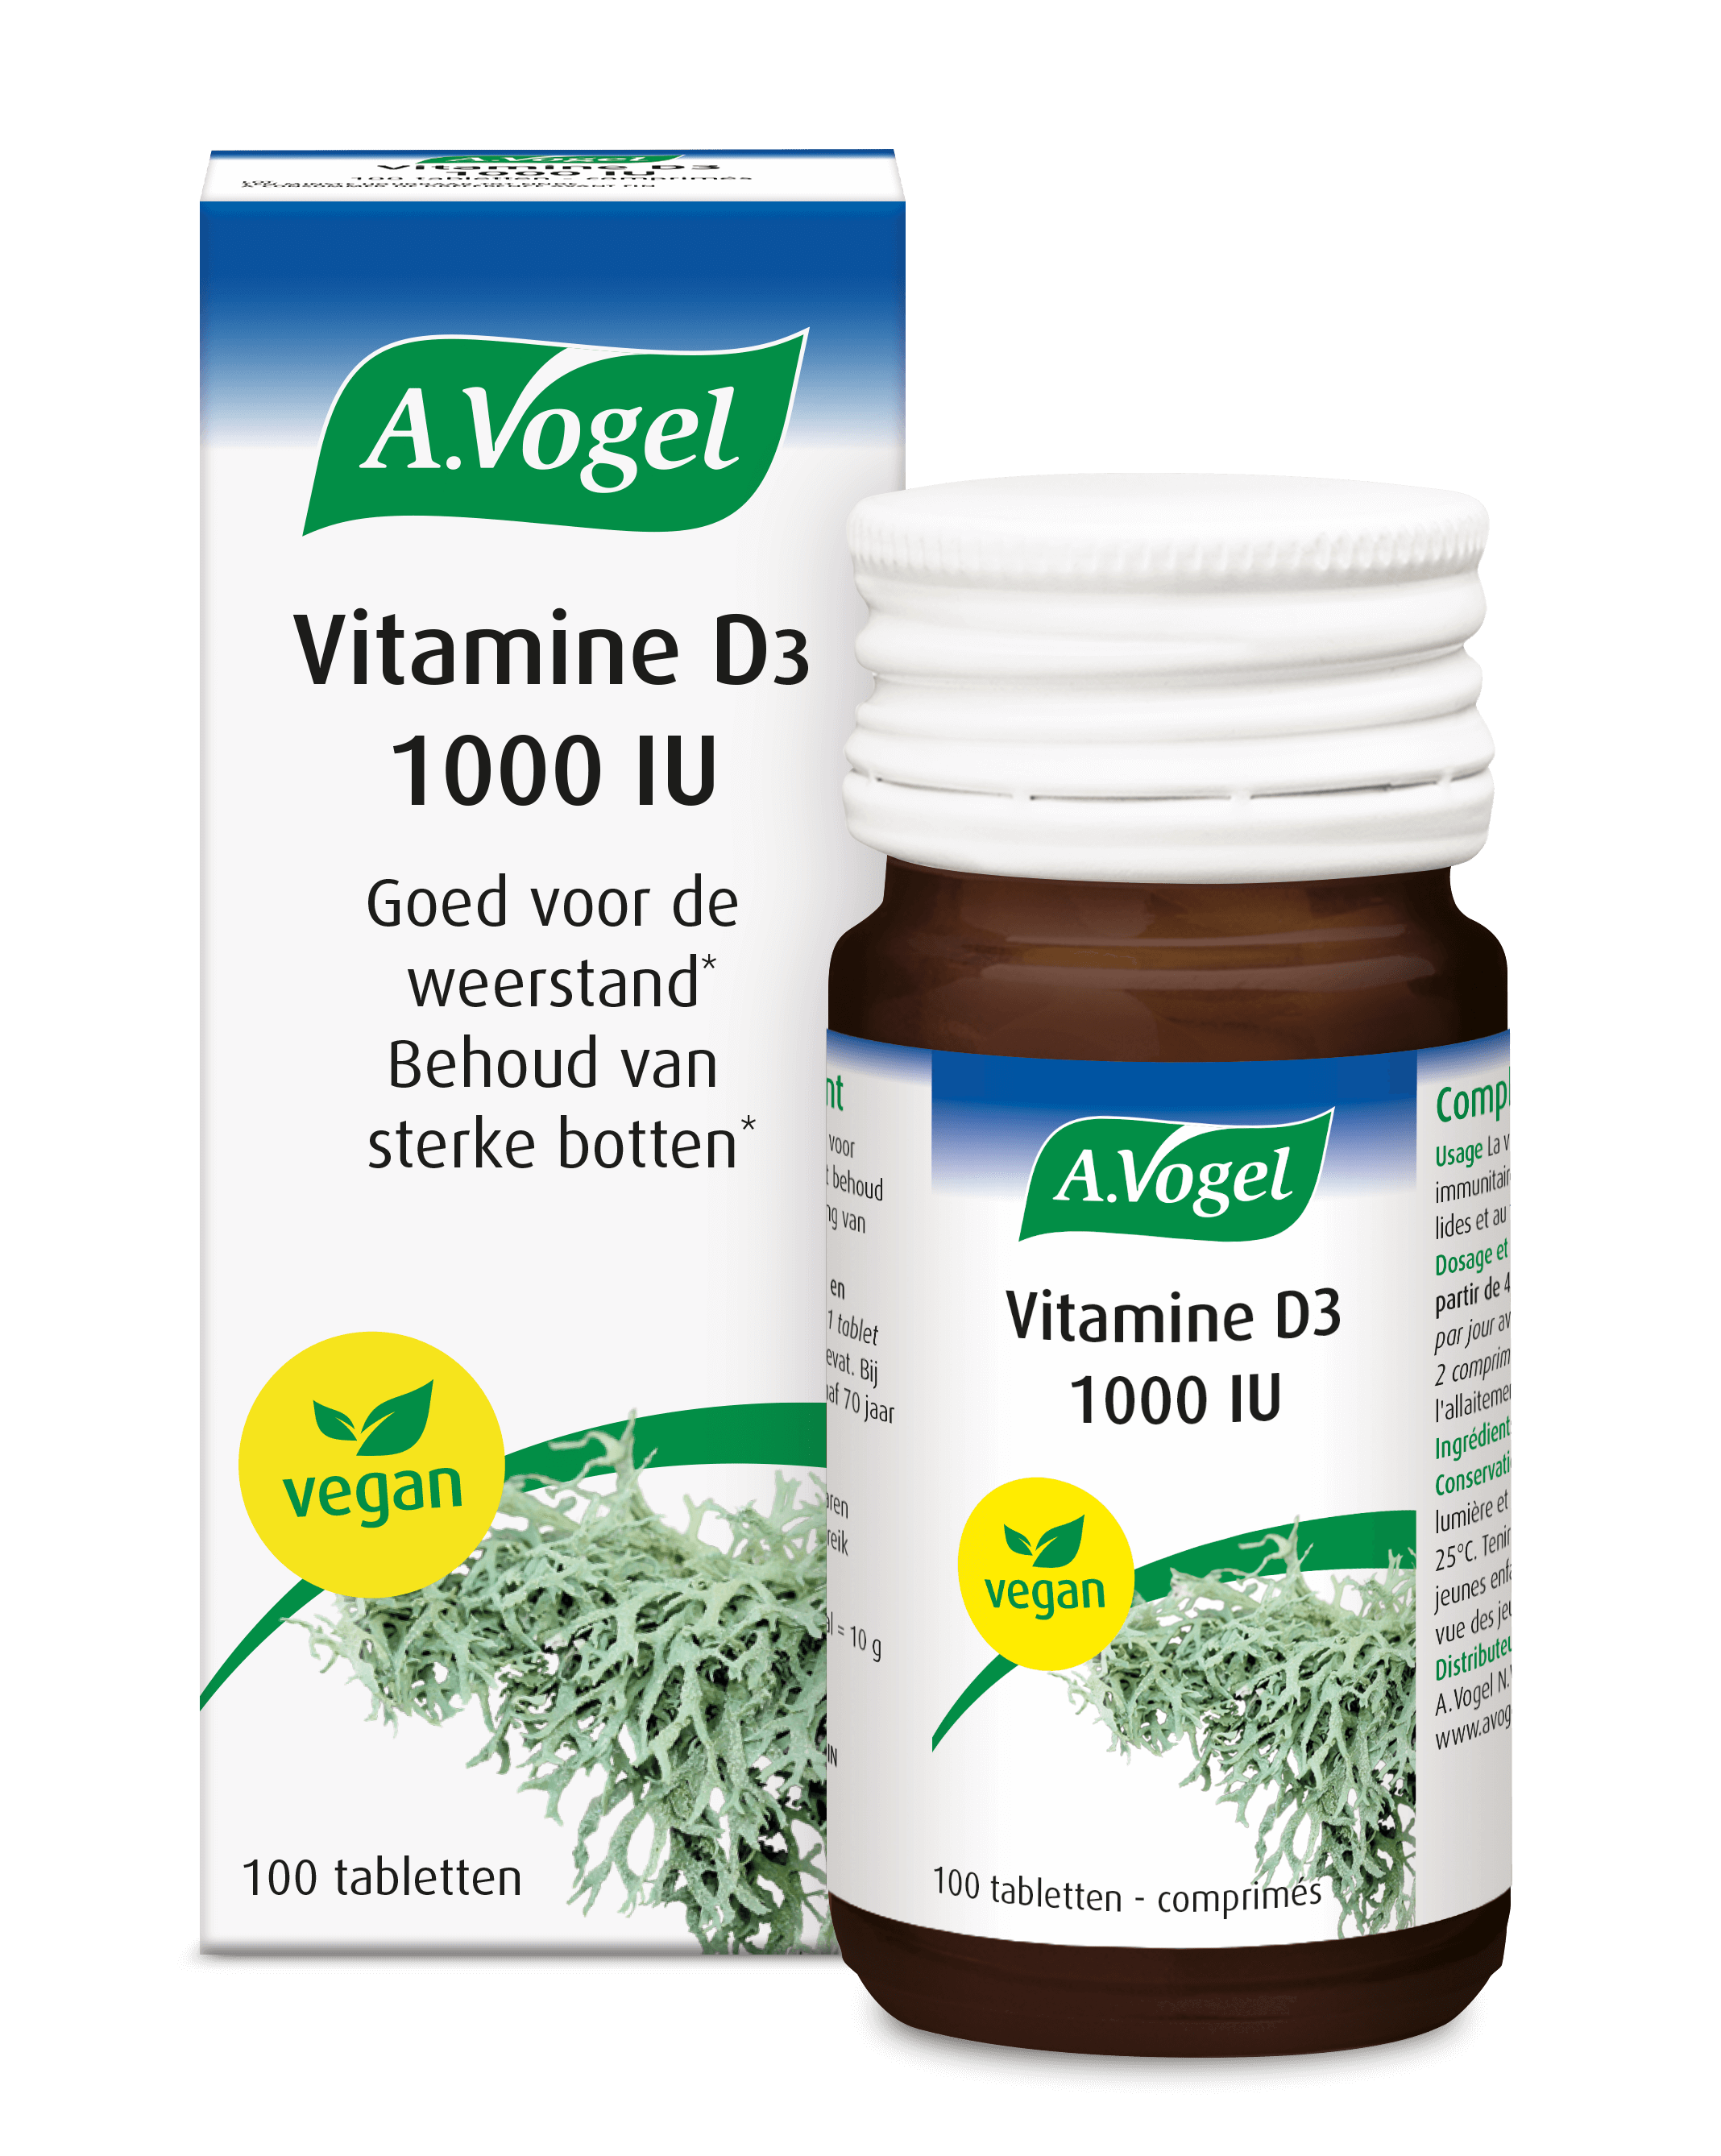 Vitamine D3 1000 IU Weerstand, botten en tanden | A.Vogel Producten